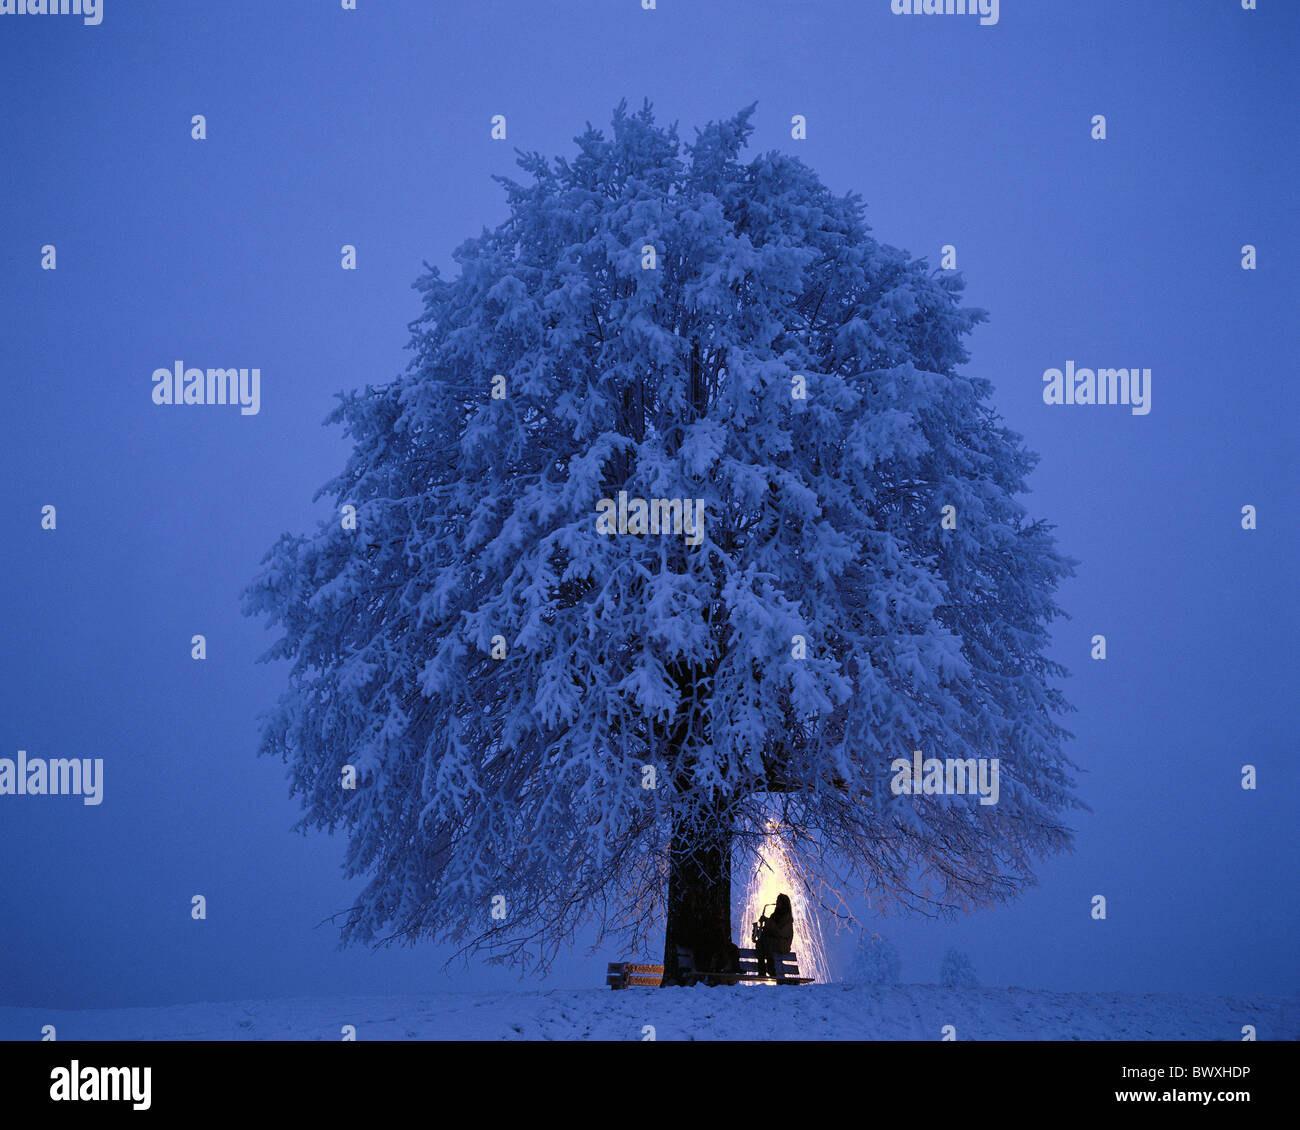 Baum Schnee Schnee Feuerwerk bei Nacht Saxophon Spieler Silhouette Silvester Stockfoto